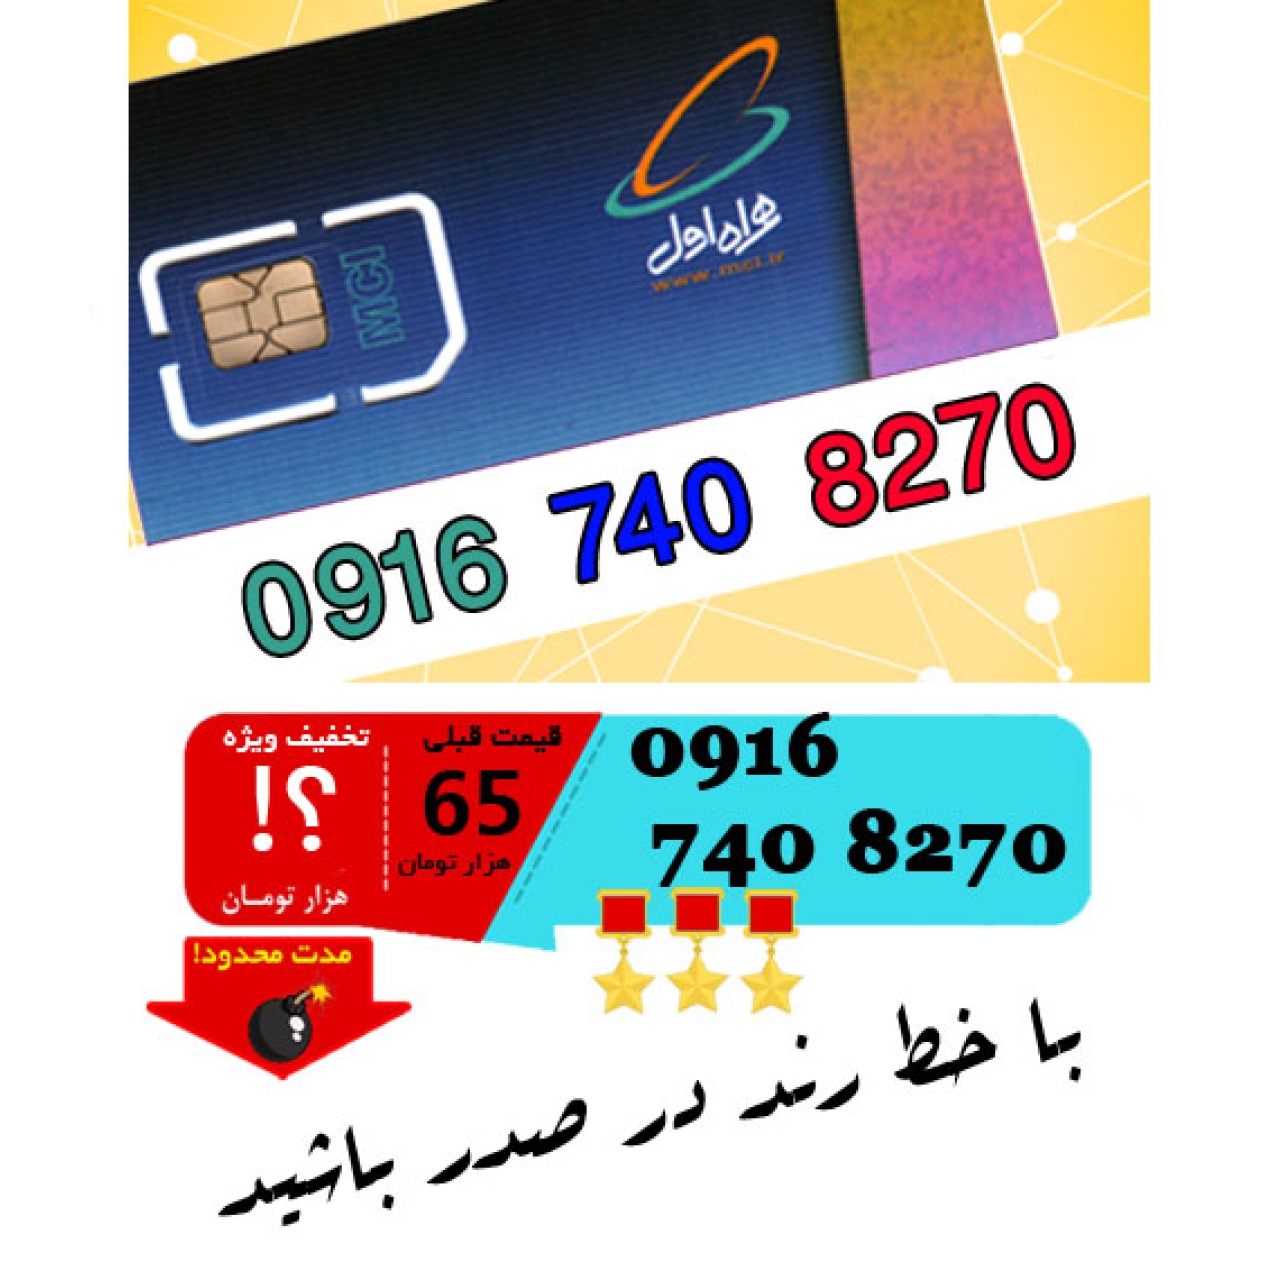 سیم کارت اعتباری رند همراه اول 09167408270